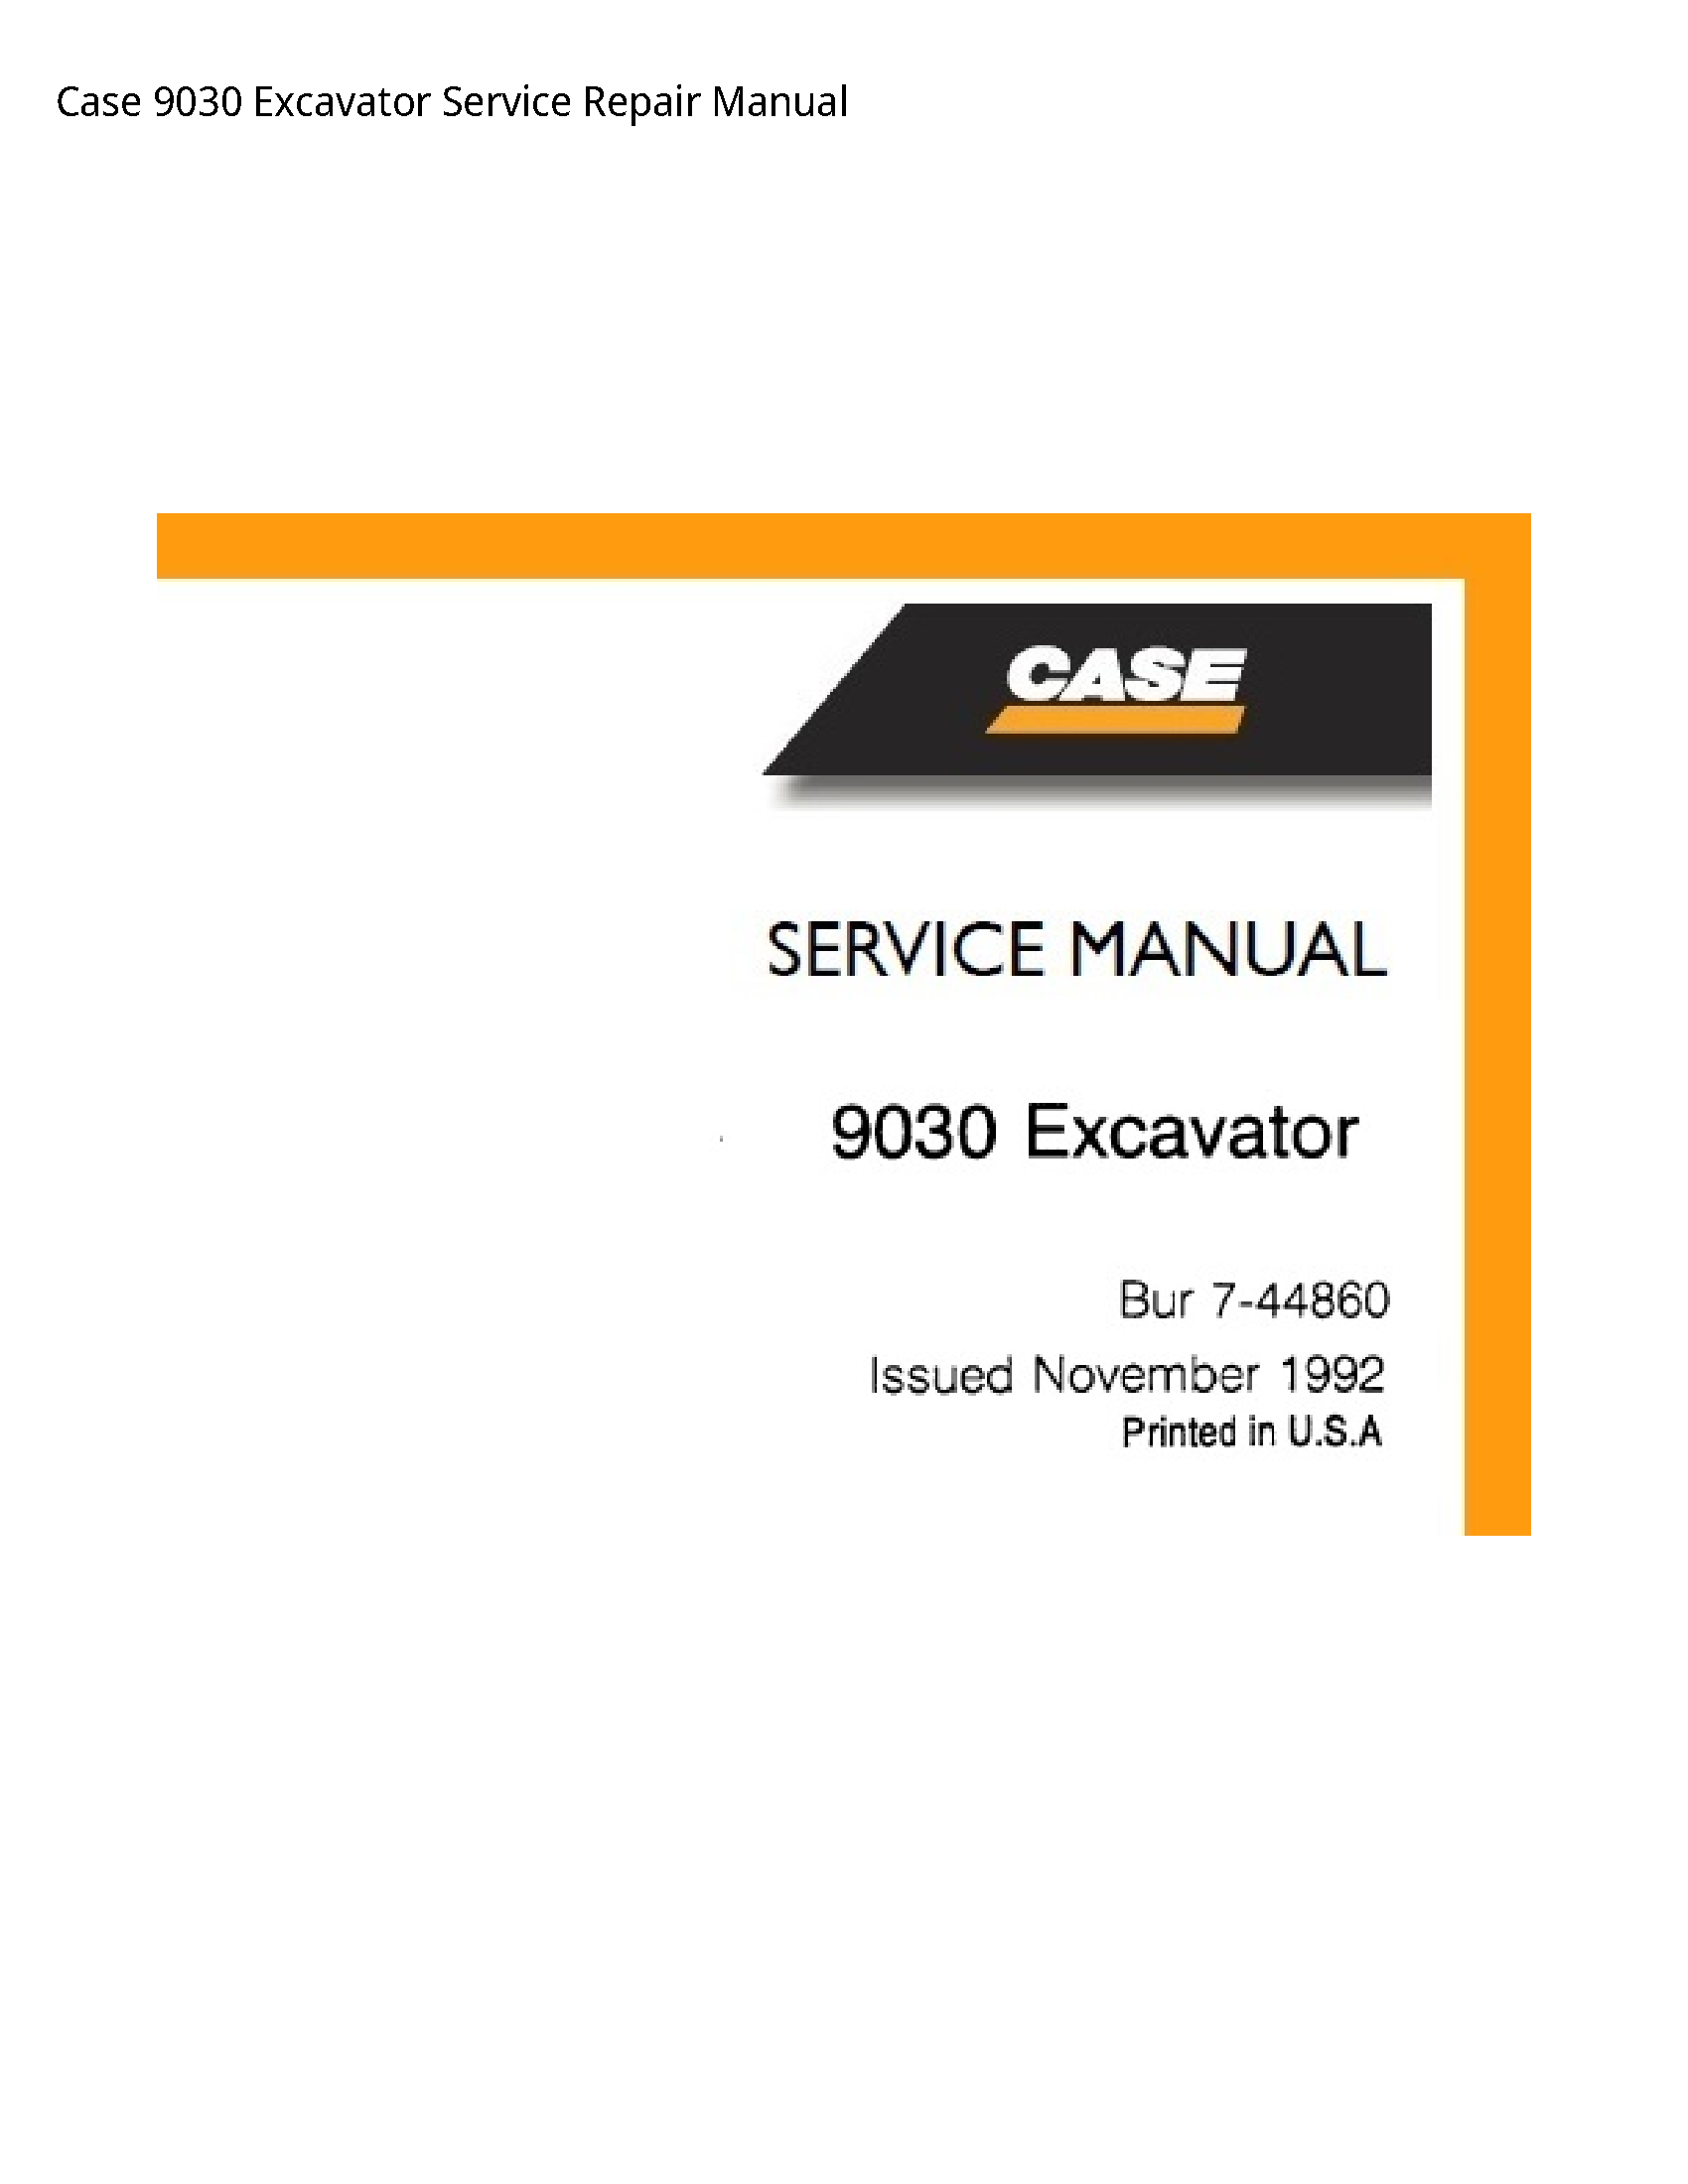 Case/Case IH 9030 Excavator manual